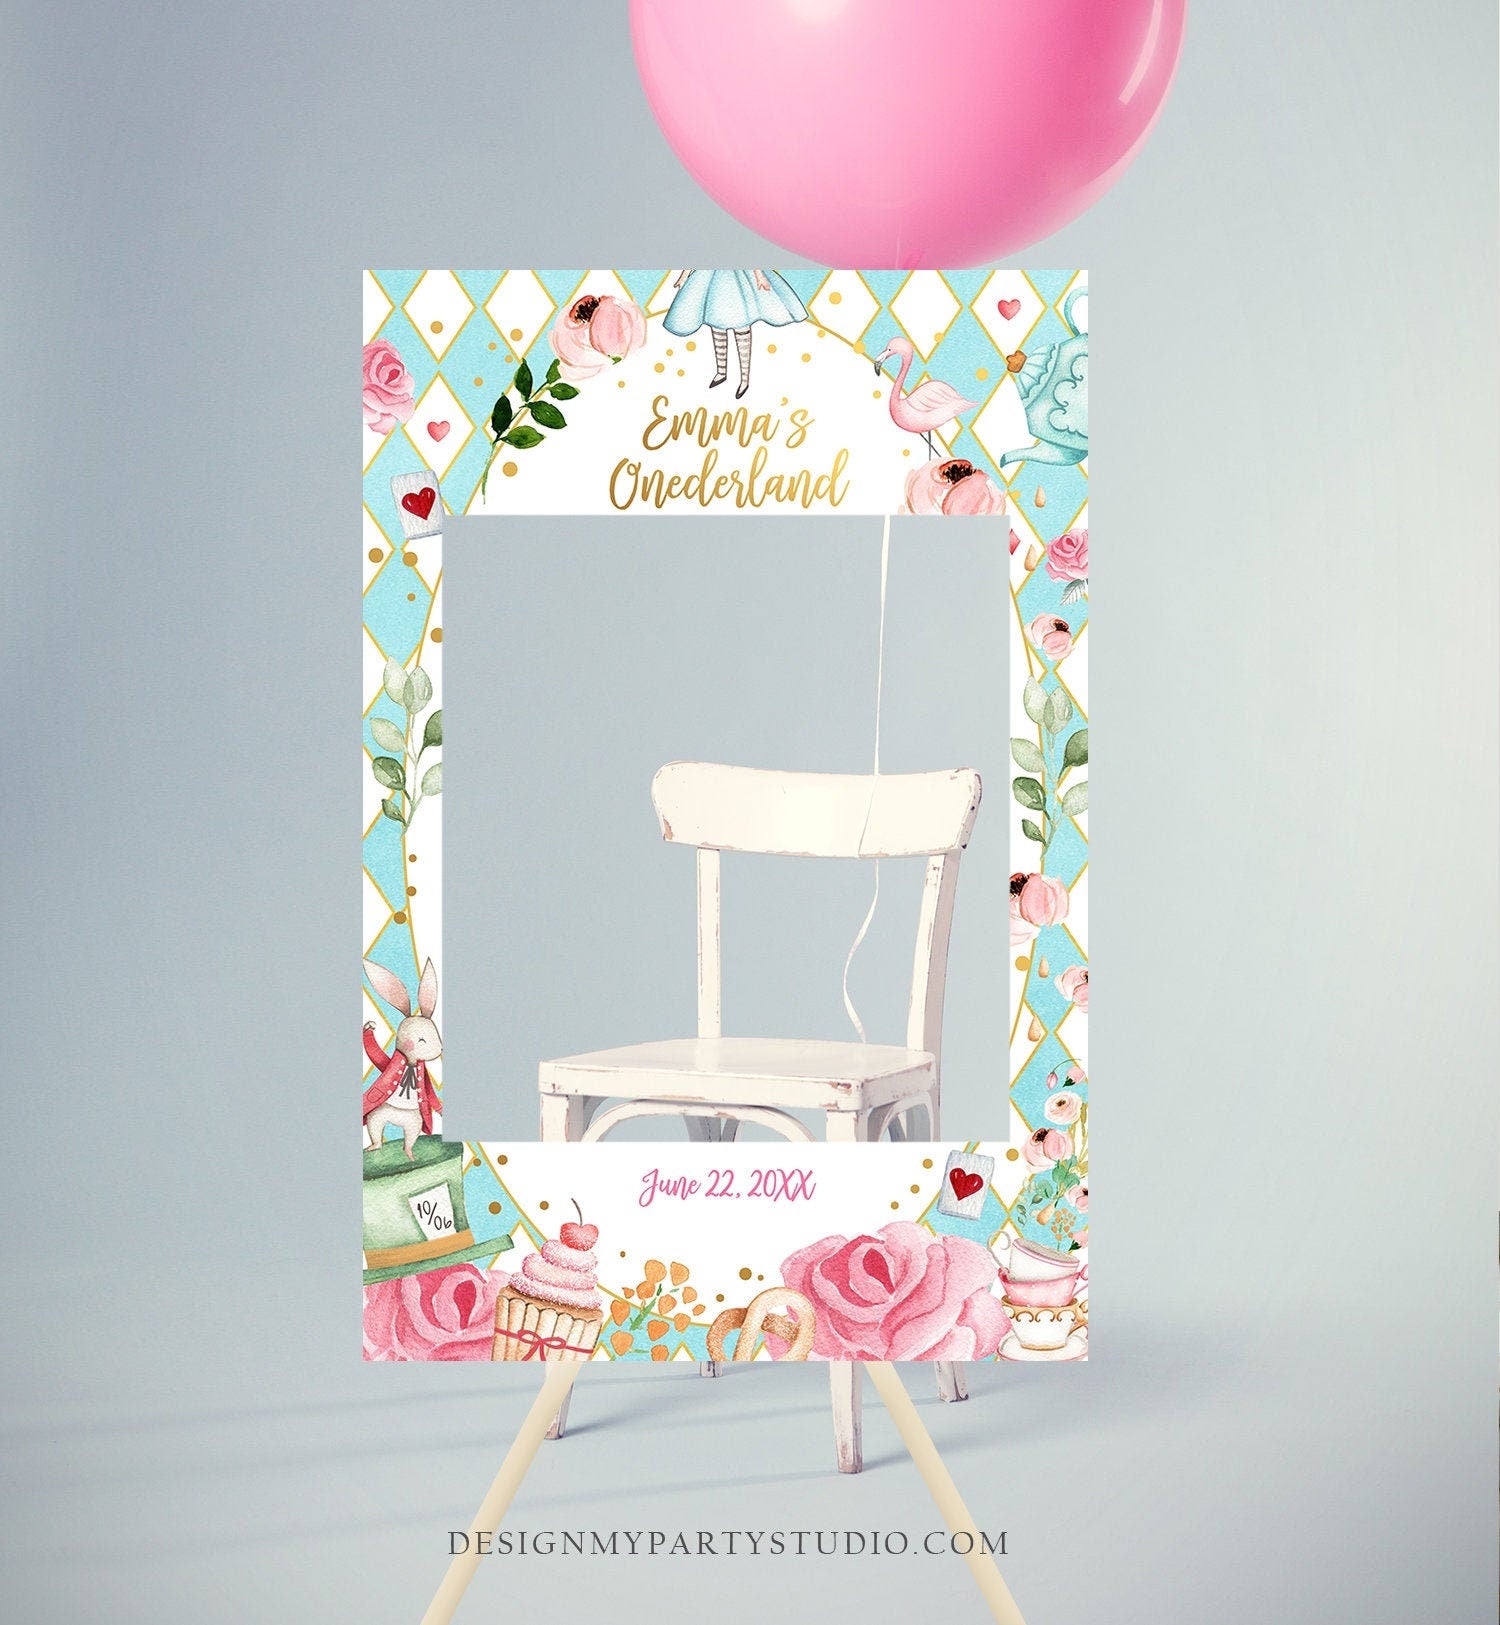 Alice In Wonderland Birthday Party Decoration Supplies Balloon